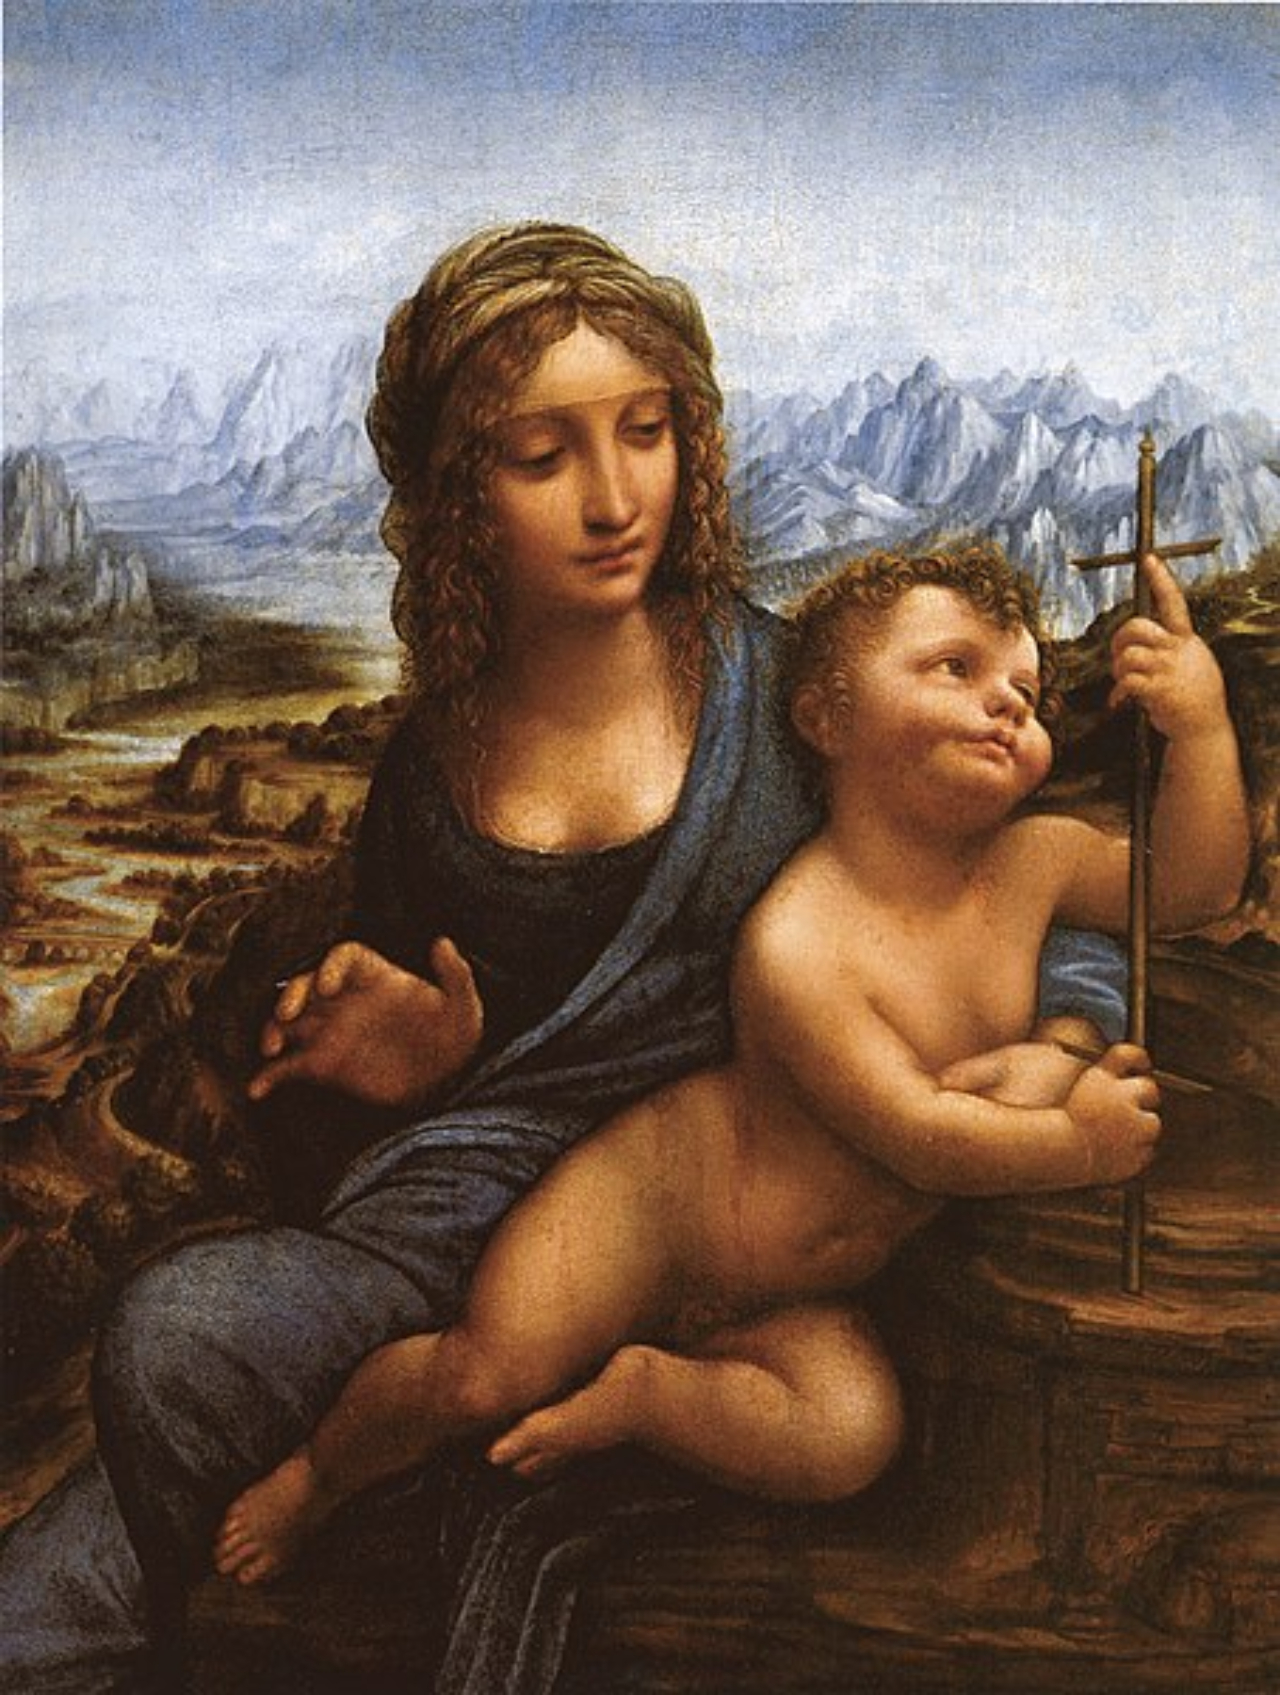 Quadro 'Virgem do Fuso', de Leonardo da Vinci